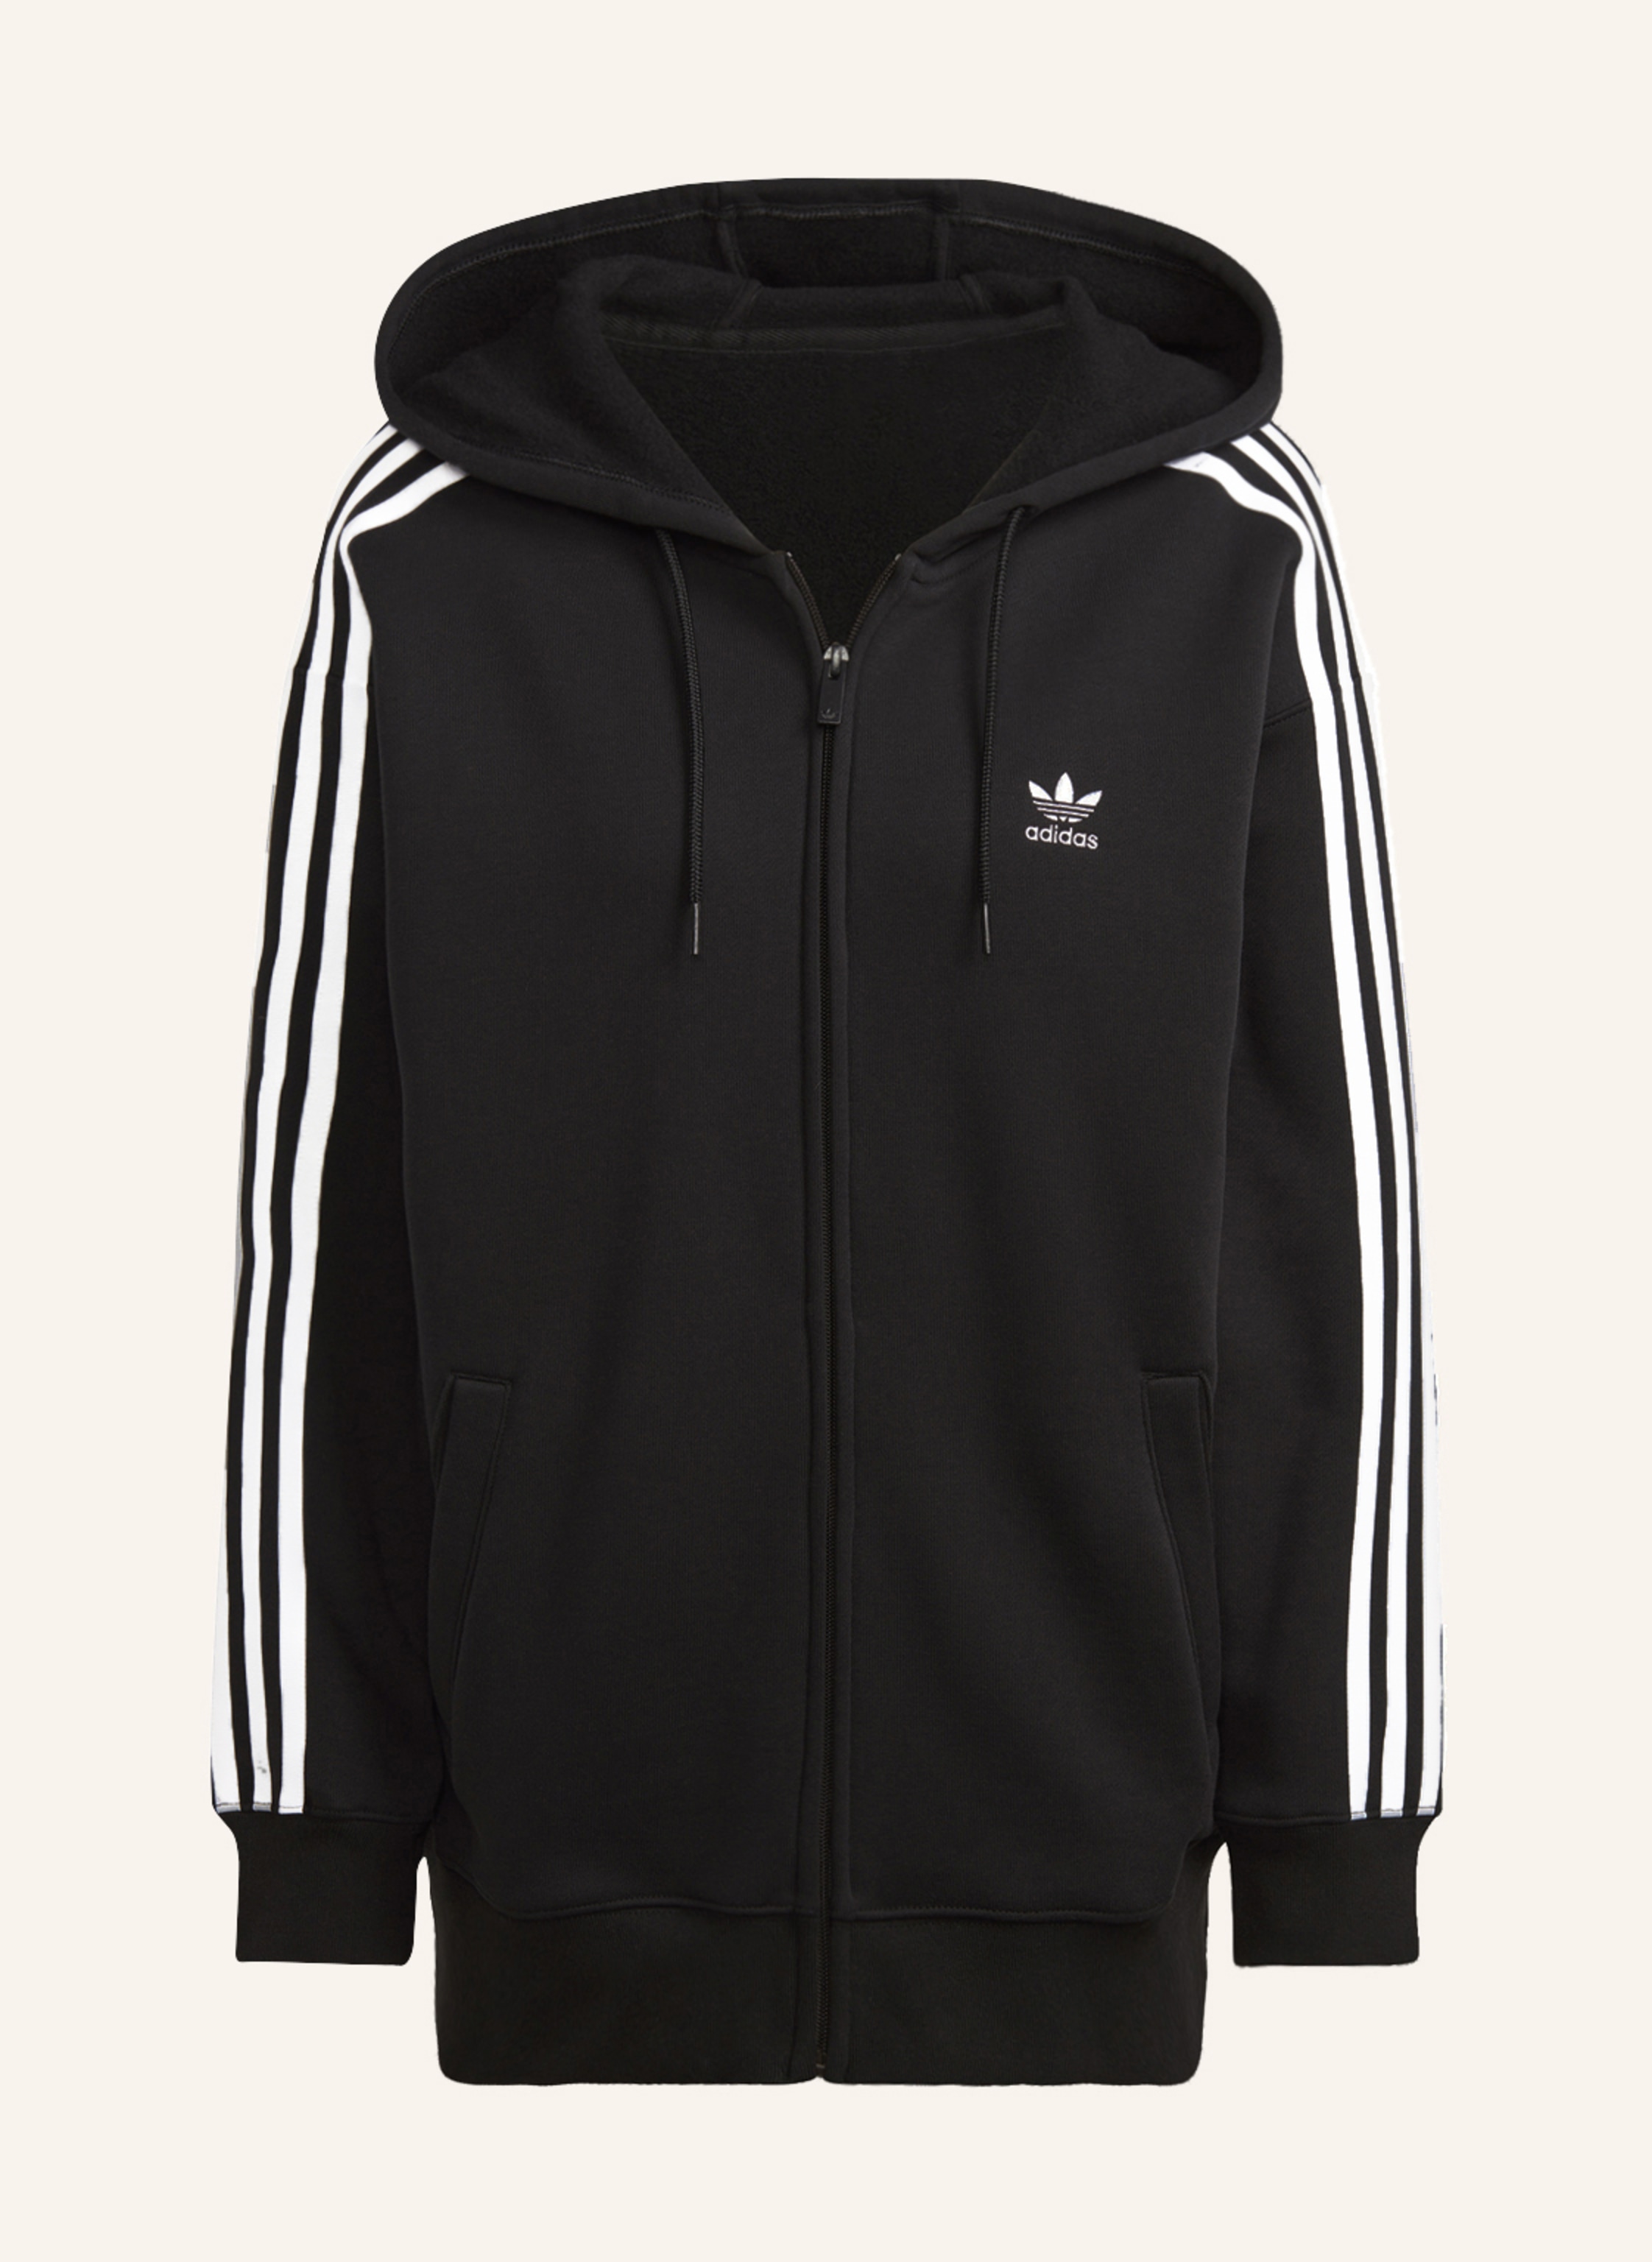 jacket in adidas Originals CLASSICS white ADICOLOR sweat Oversized black/